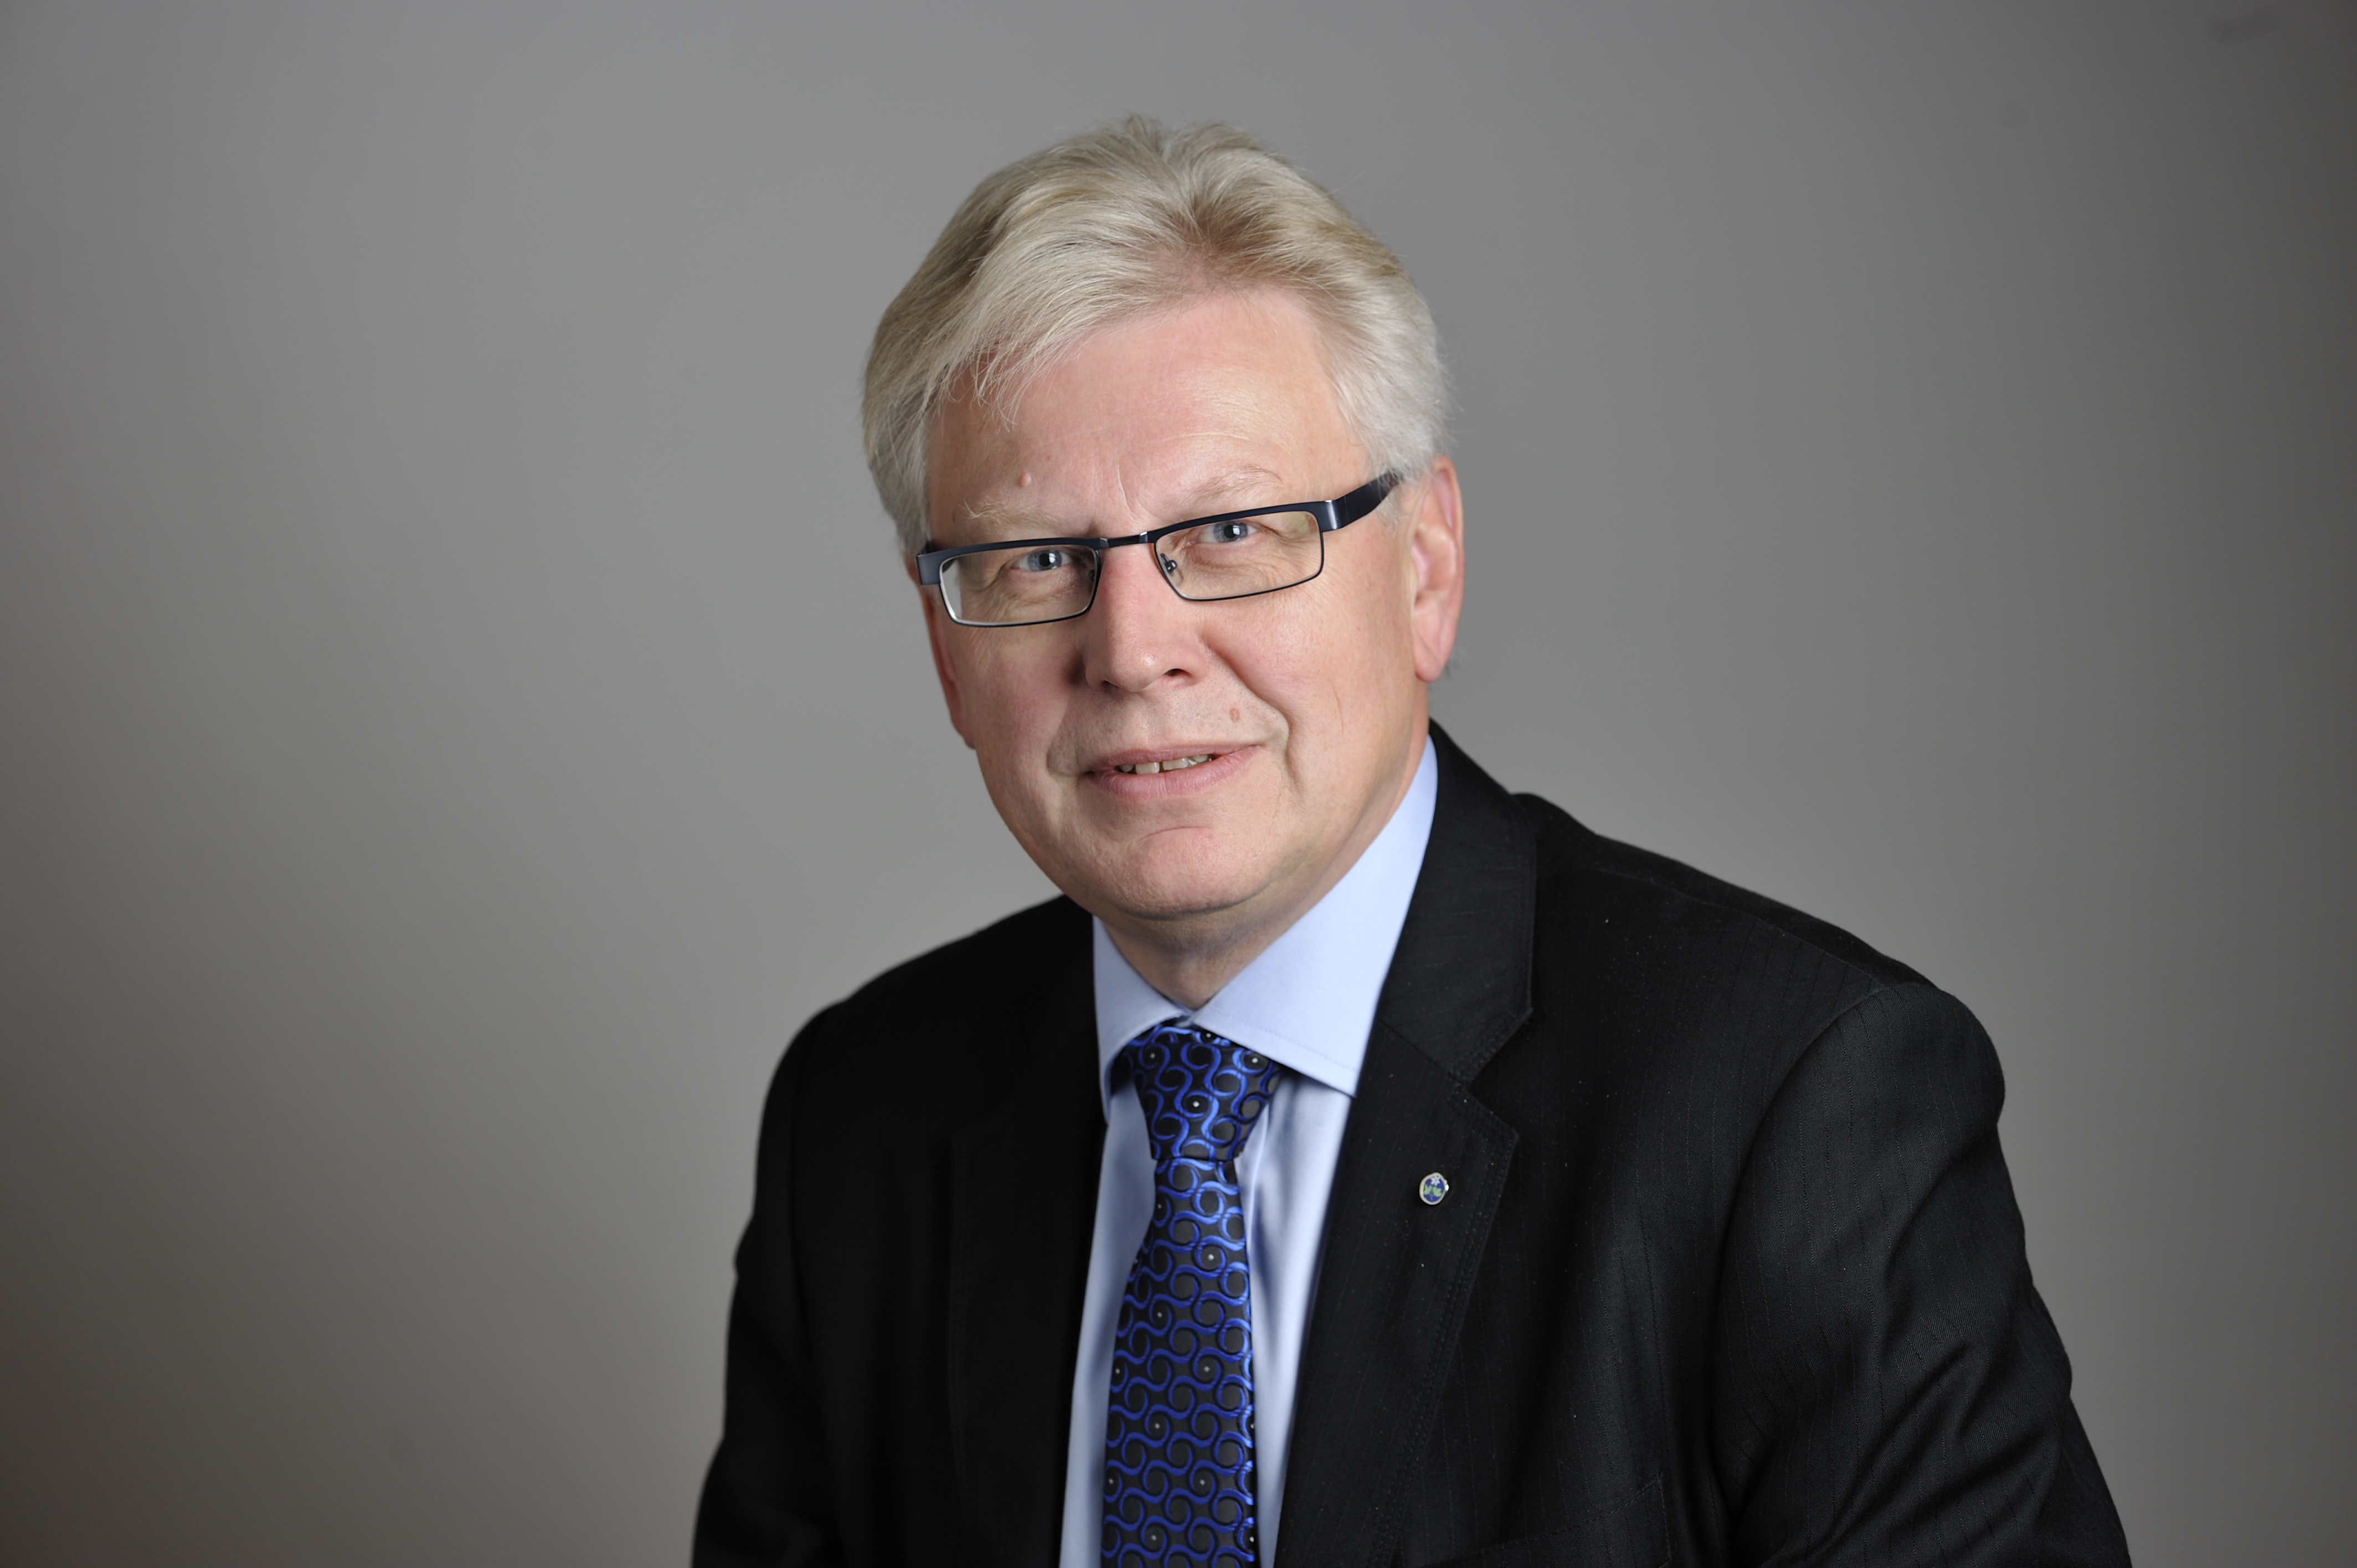 Kristdemokraternas äldrepolitiske talesperson Anders Andersson menar att Gustaf Douglas tidigare affärer är ett trovärdighetsproblem och att alla politiker och företagare måste rannsaka sig själva.